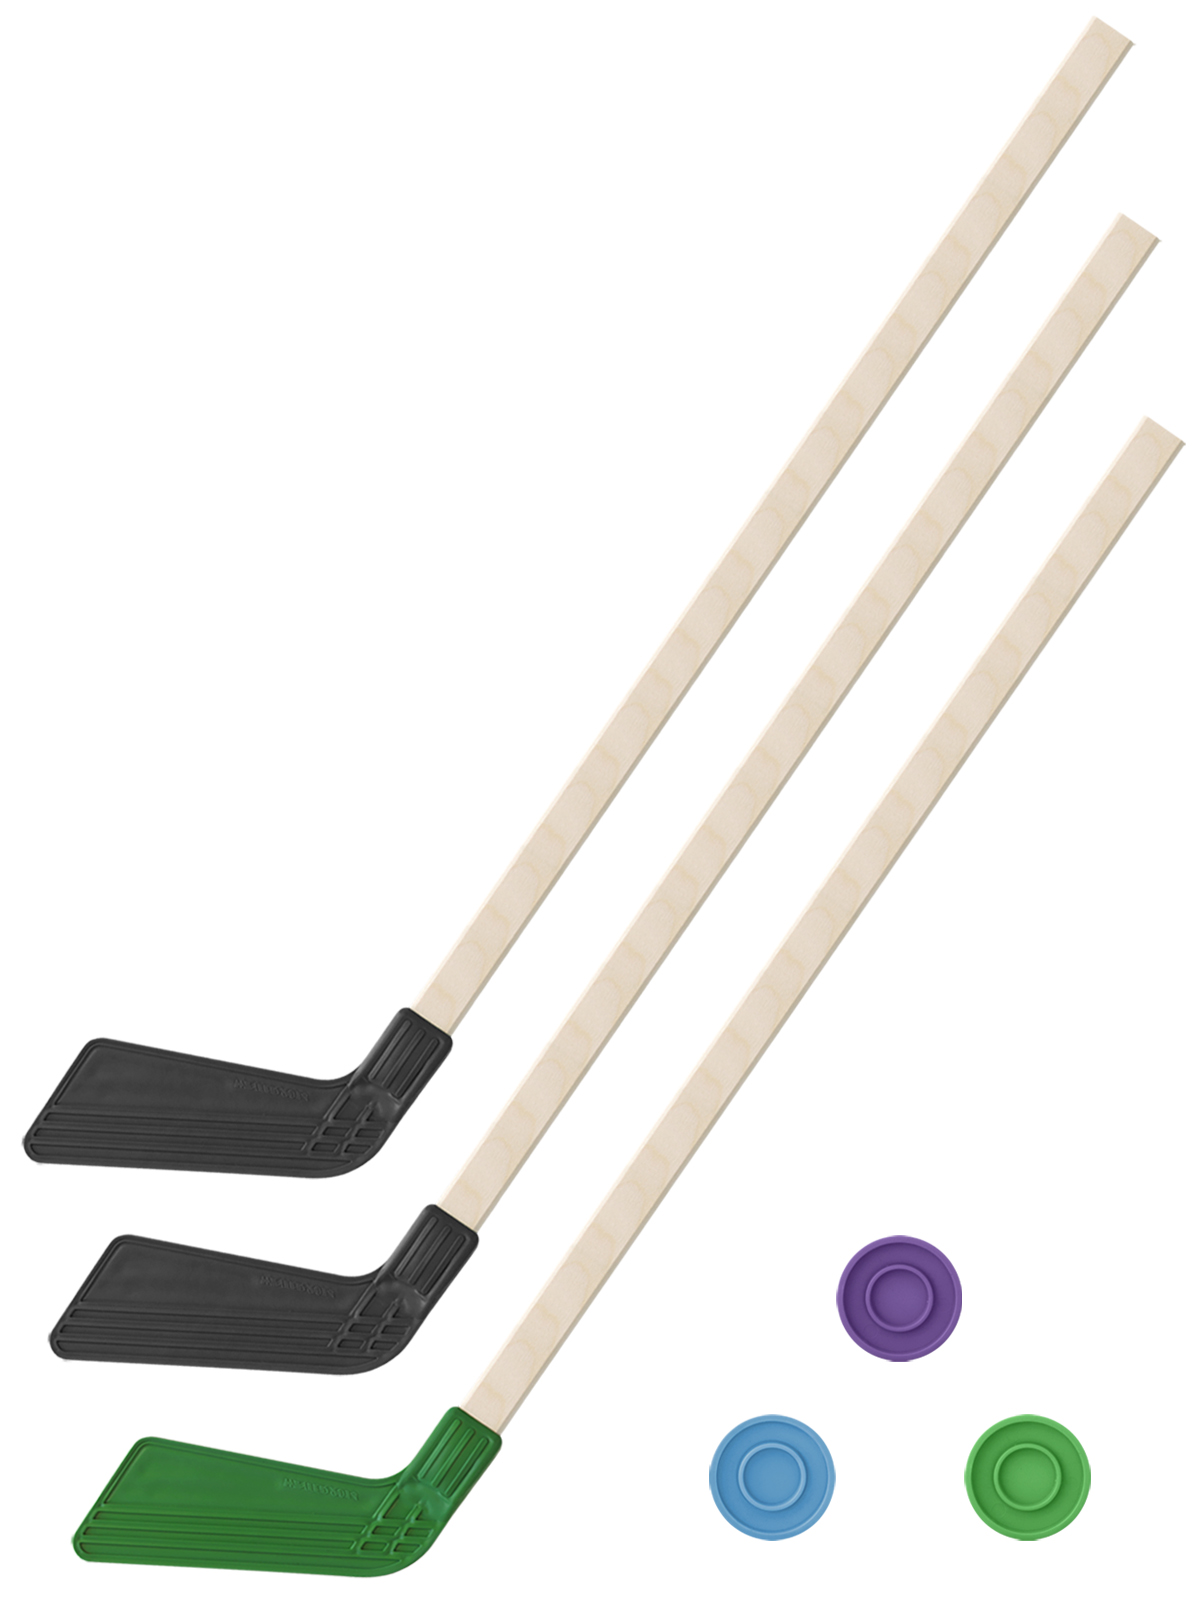 Детский хоккейный набор Задира-плюс 3 в 1 Клюшка хоккейная 80 см (2черн, 1зел) + 3 шайбы